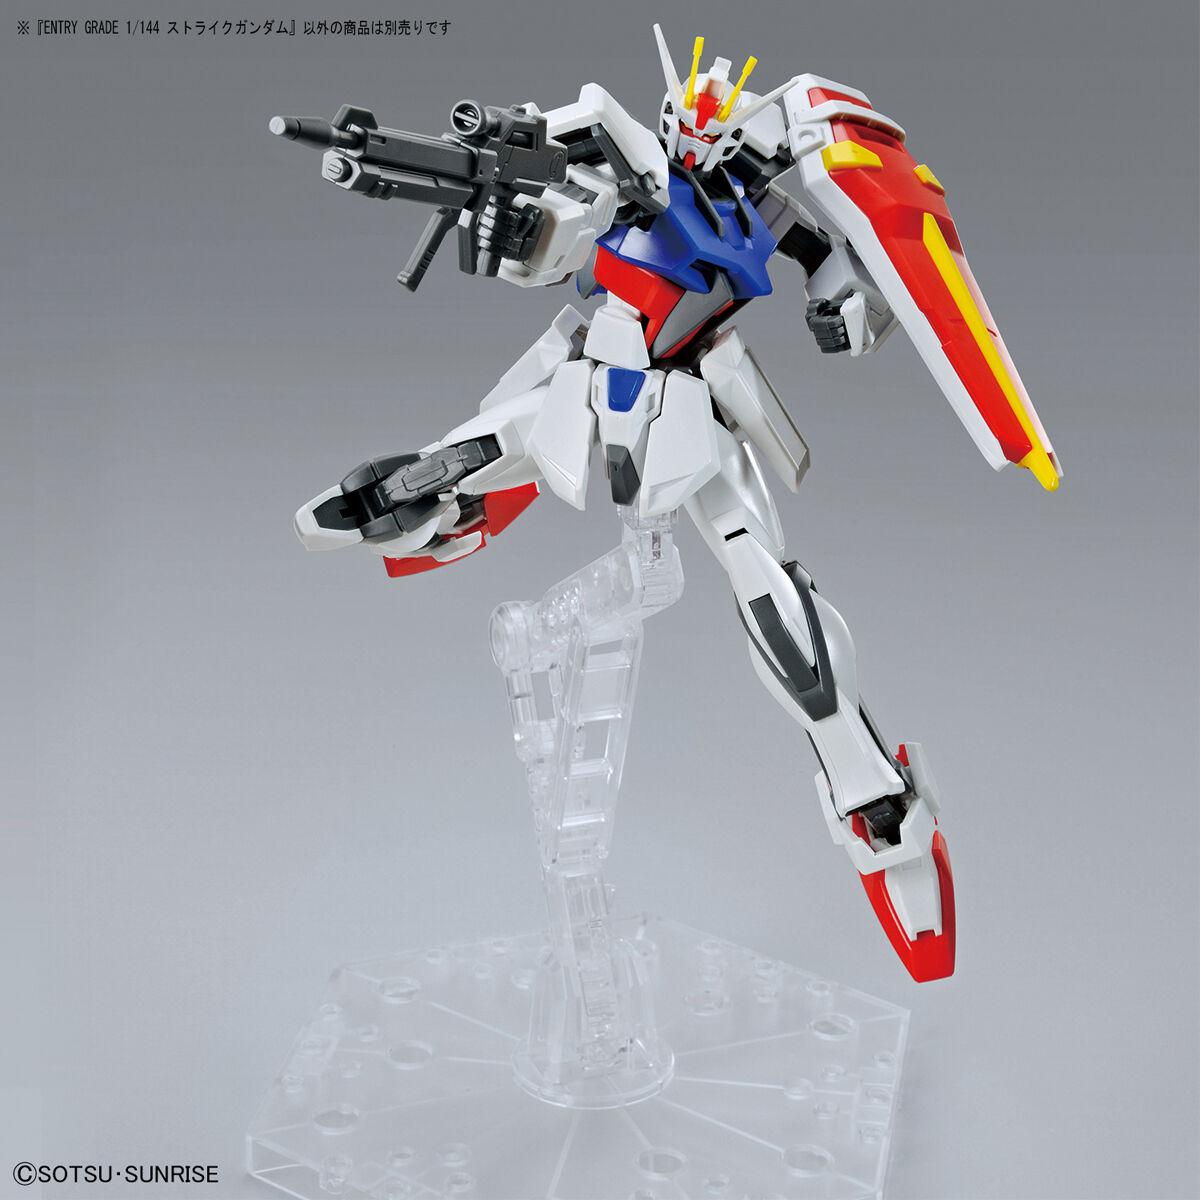 EG 1/144 Strike Gundam